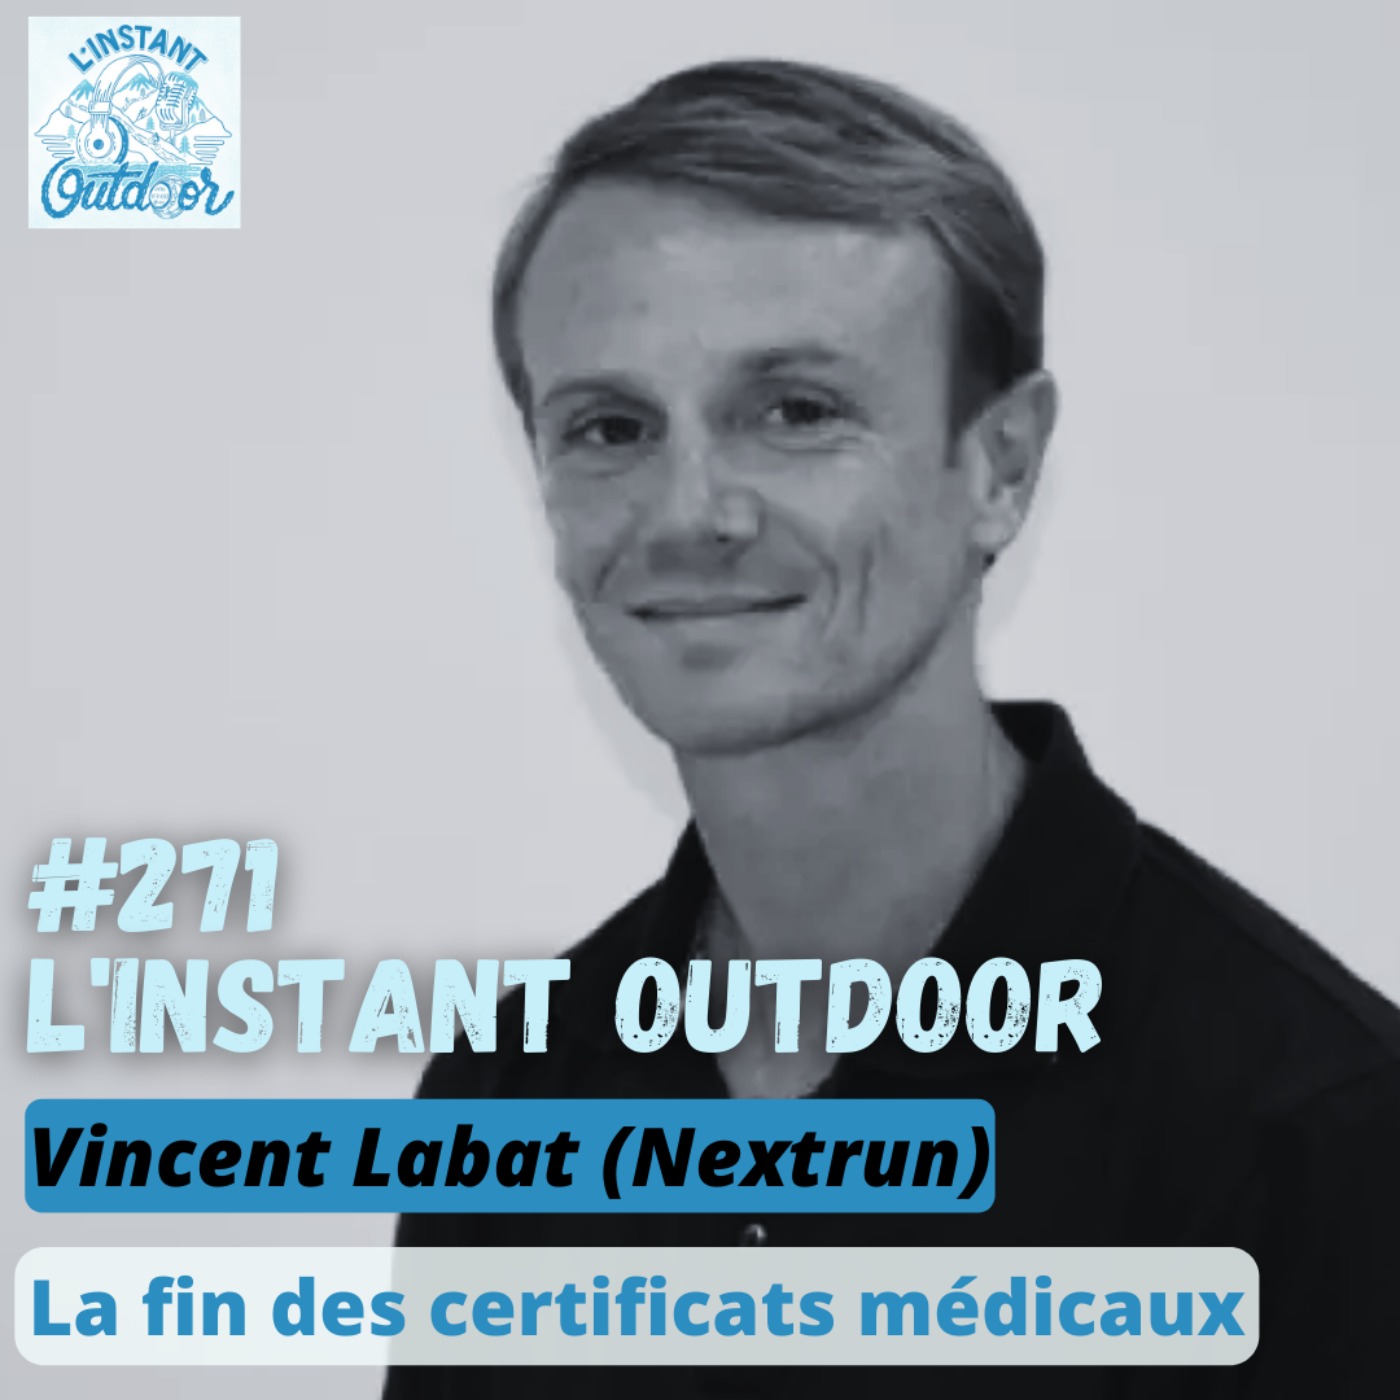 La fin des certificats médicaux avec Vincent Labat (Nextrun)